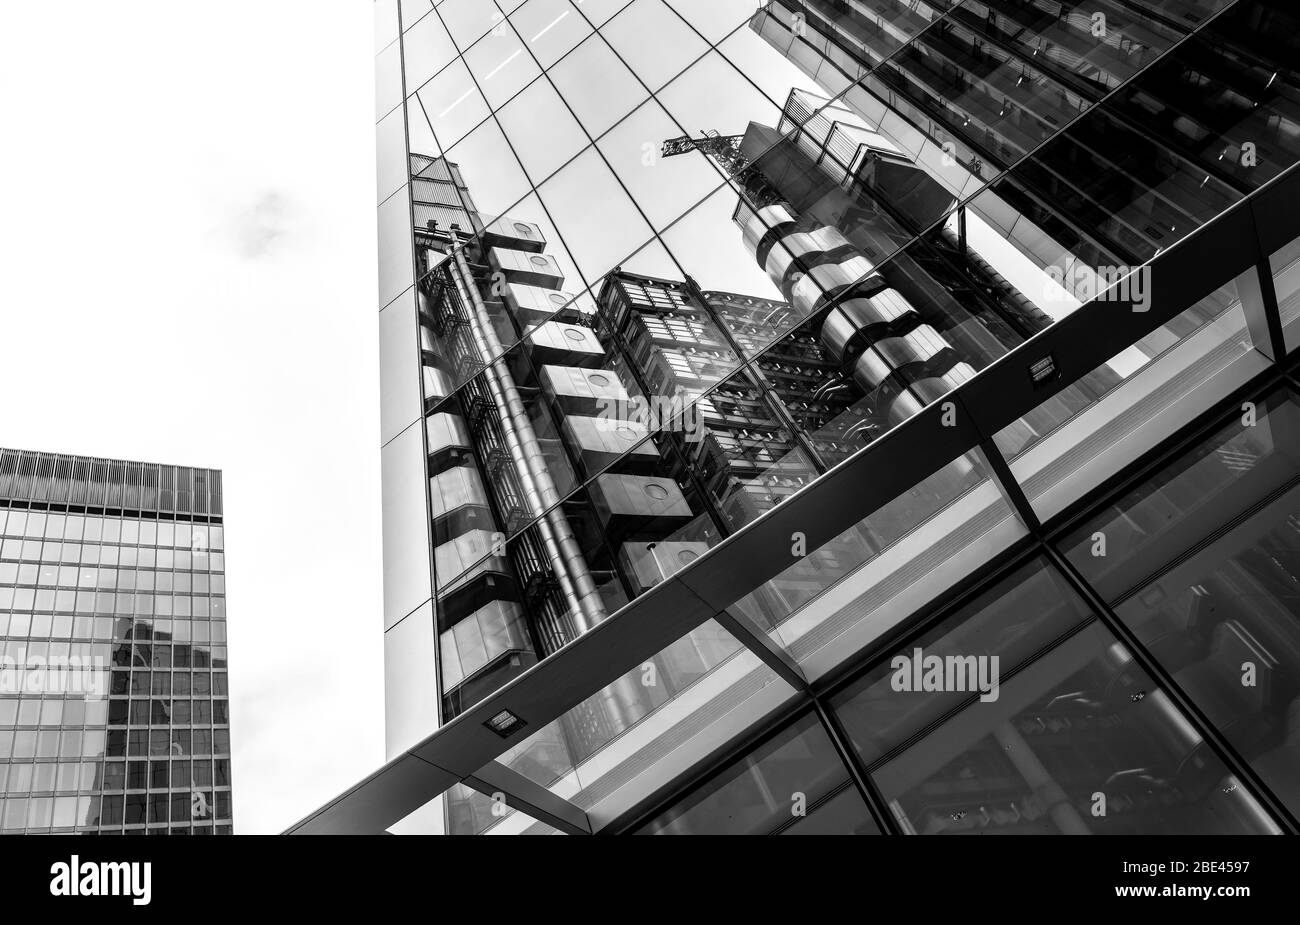 Vue monochrome de la réflexion du bâtiment moderne en verre, Londres Royaume-Uni Banque D'Images